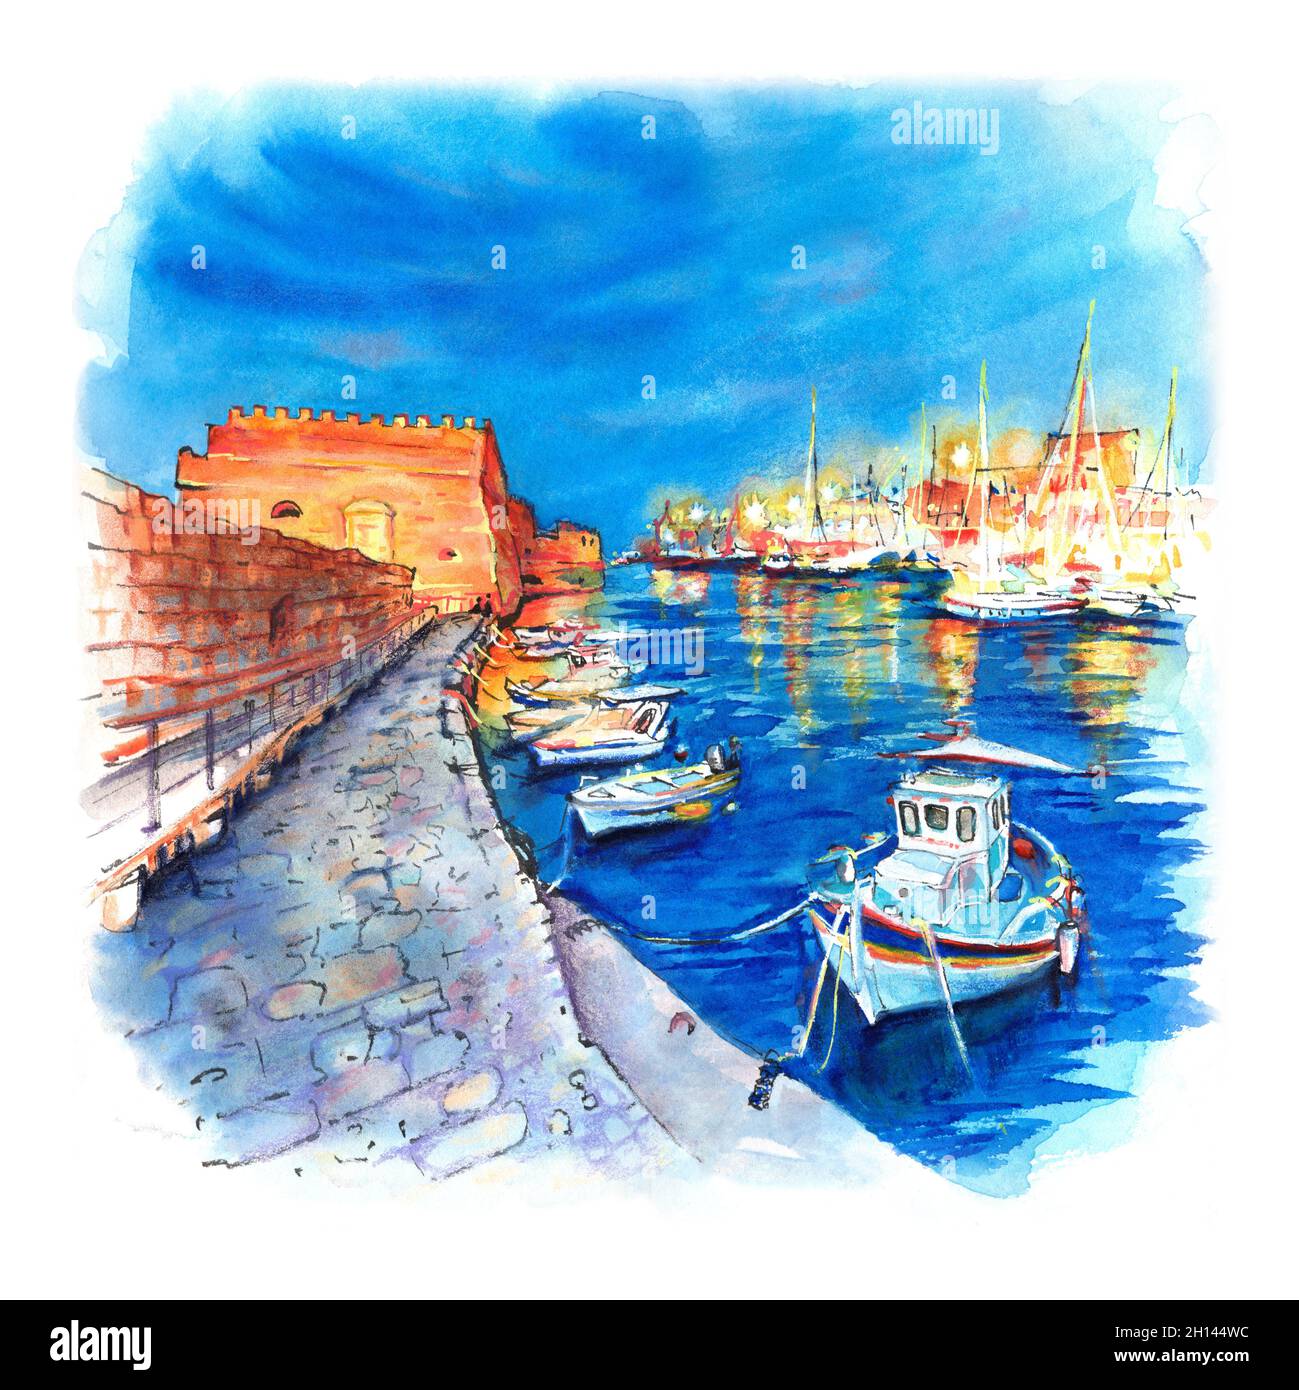 Croquis aquarelle du vieux port d'Héraklion avec la forteresse vénitienne  Koules, les bateaux et le port de plaisance pendant l'heure bleue, Crète,  Grèce Photo Stock - Alamy